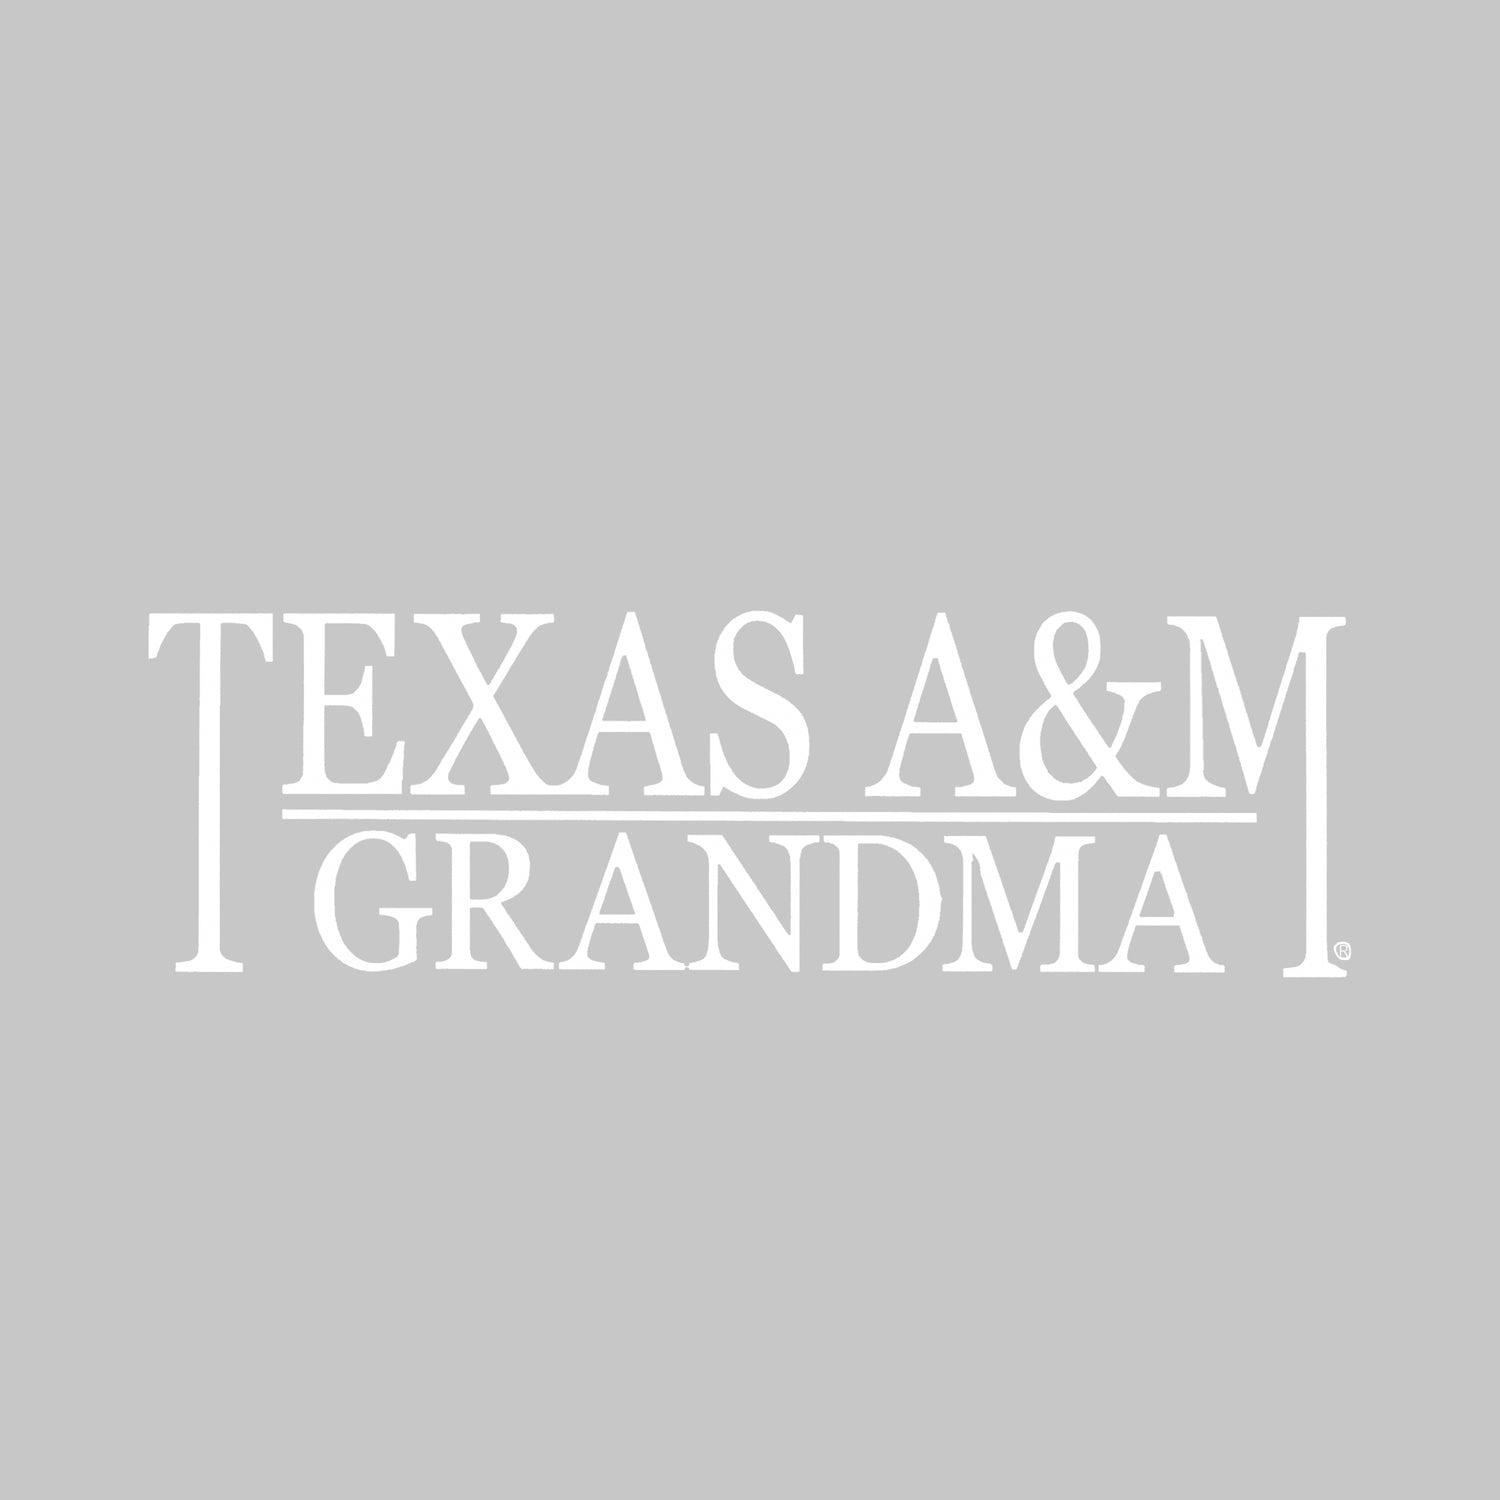 Texas A&M Grandma Vinyl Decal